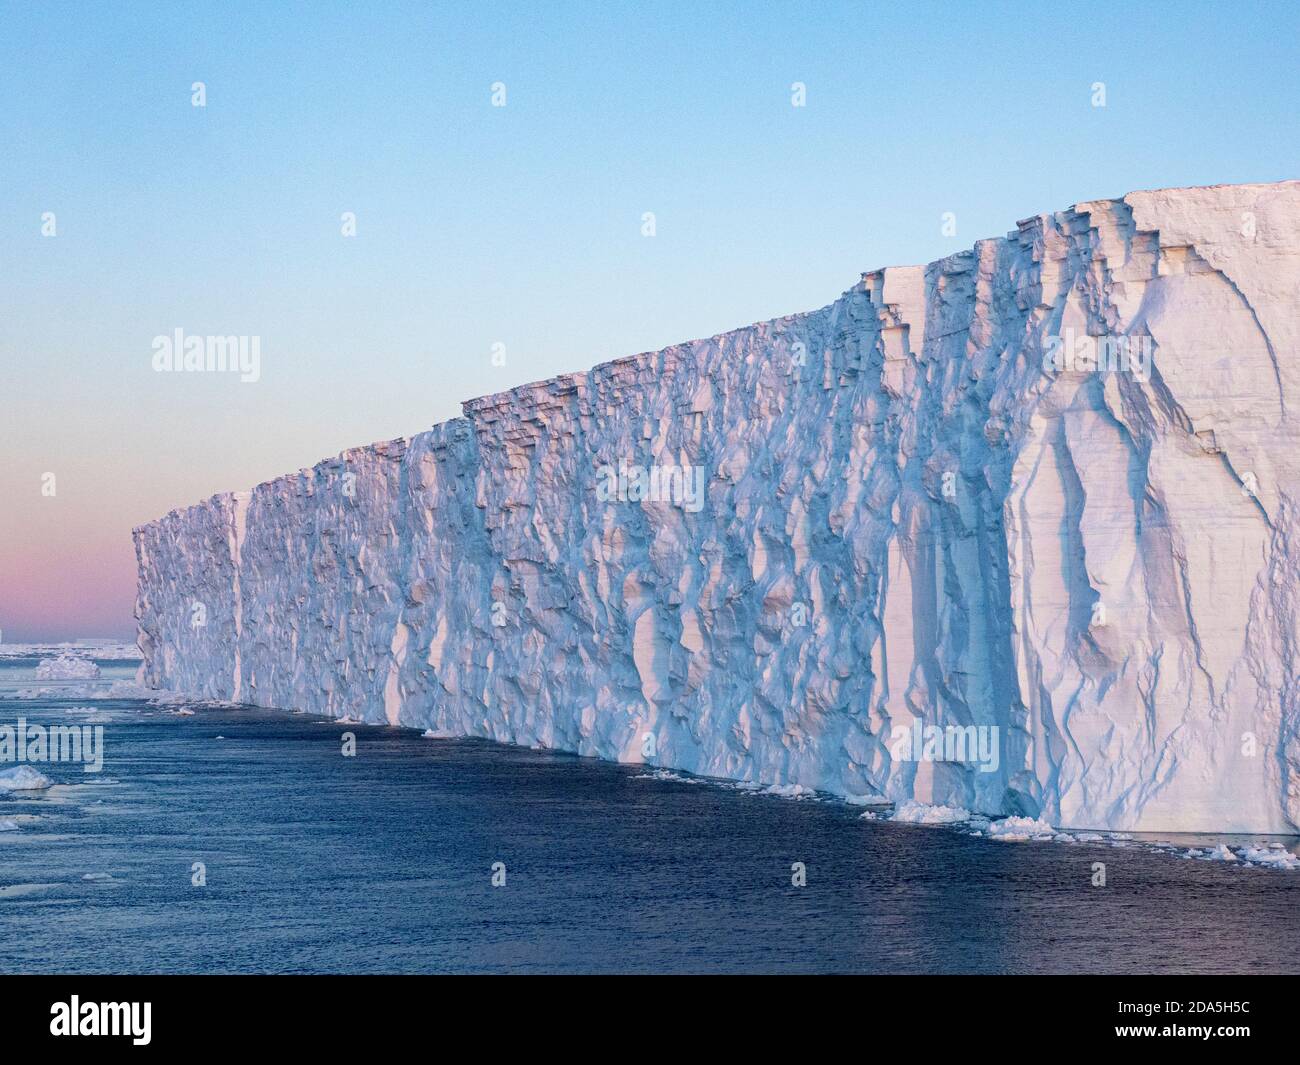 Meereis, Tafeleisberge und Brash Ice in Erebus und Terror Golf, Weddellmeer, Antarktis. Stockfoto